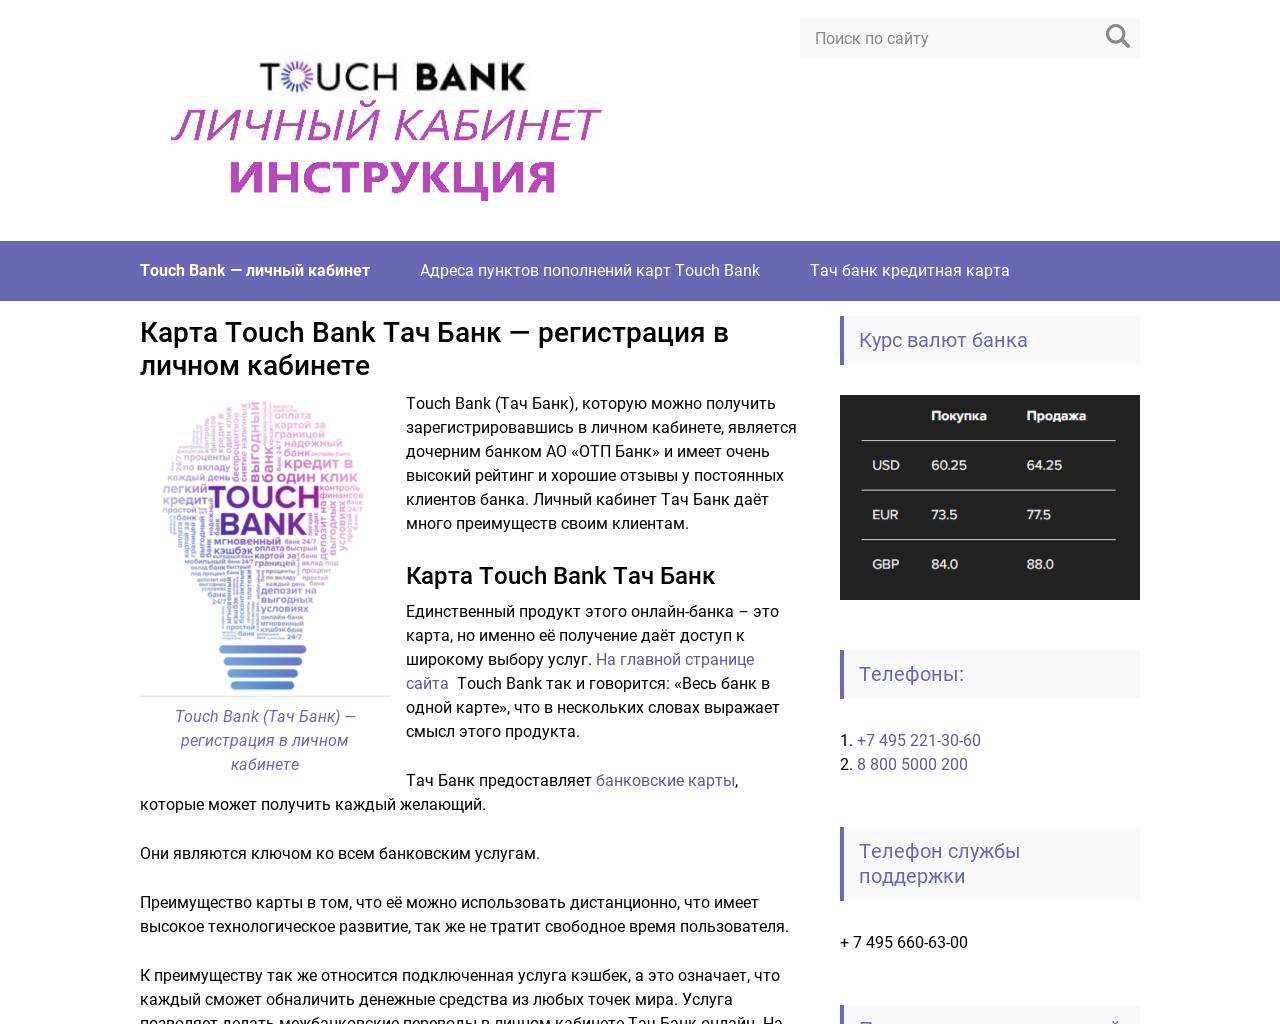 Изображение сайта lk-touchbank.ru в разрешении 1280x1024